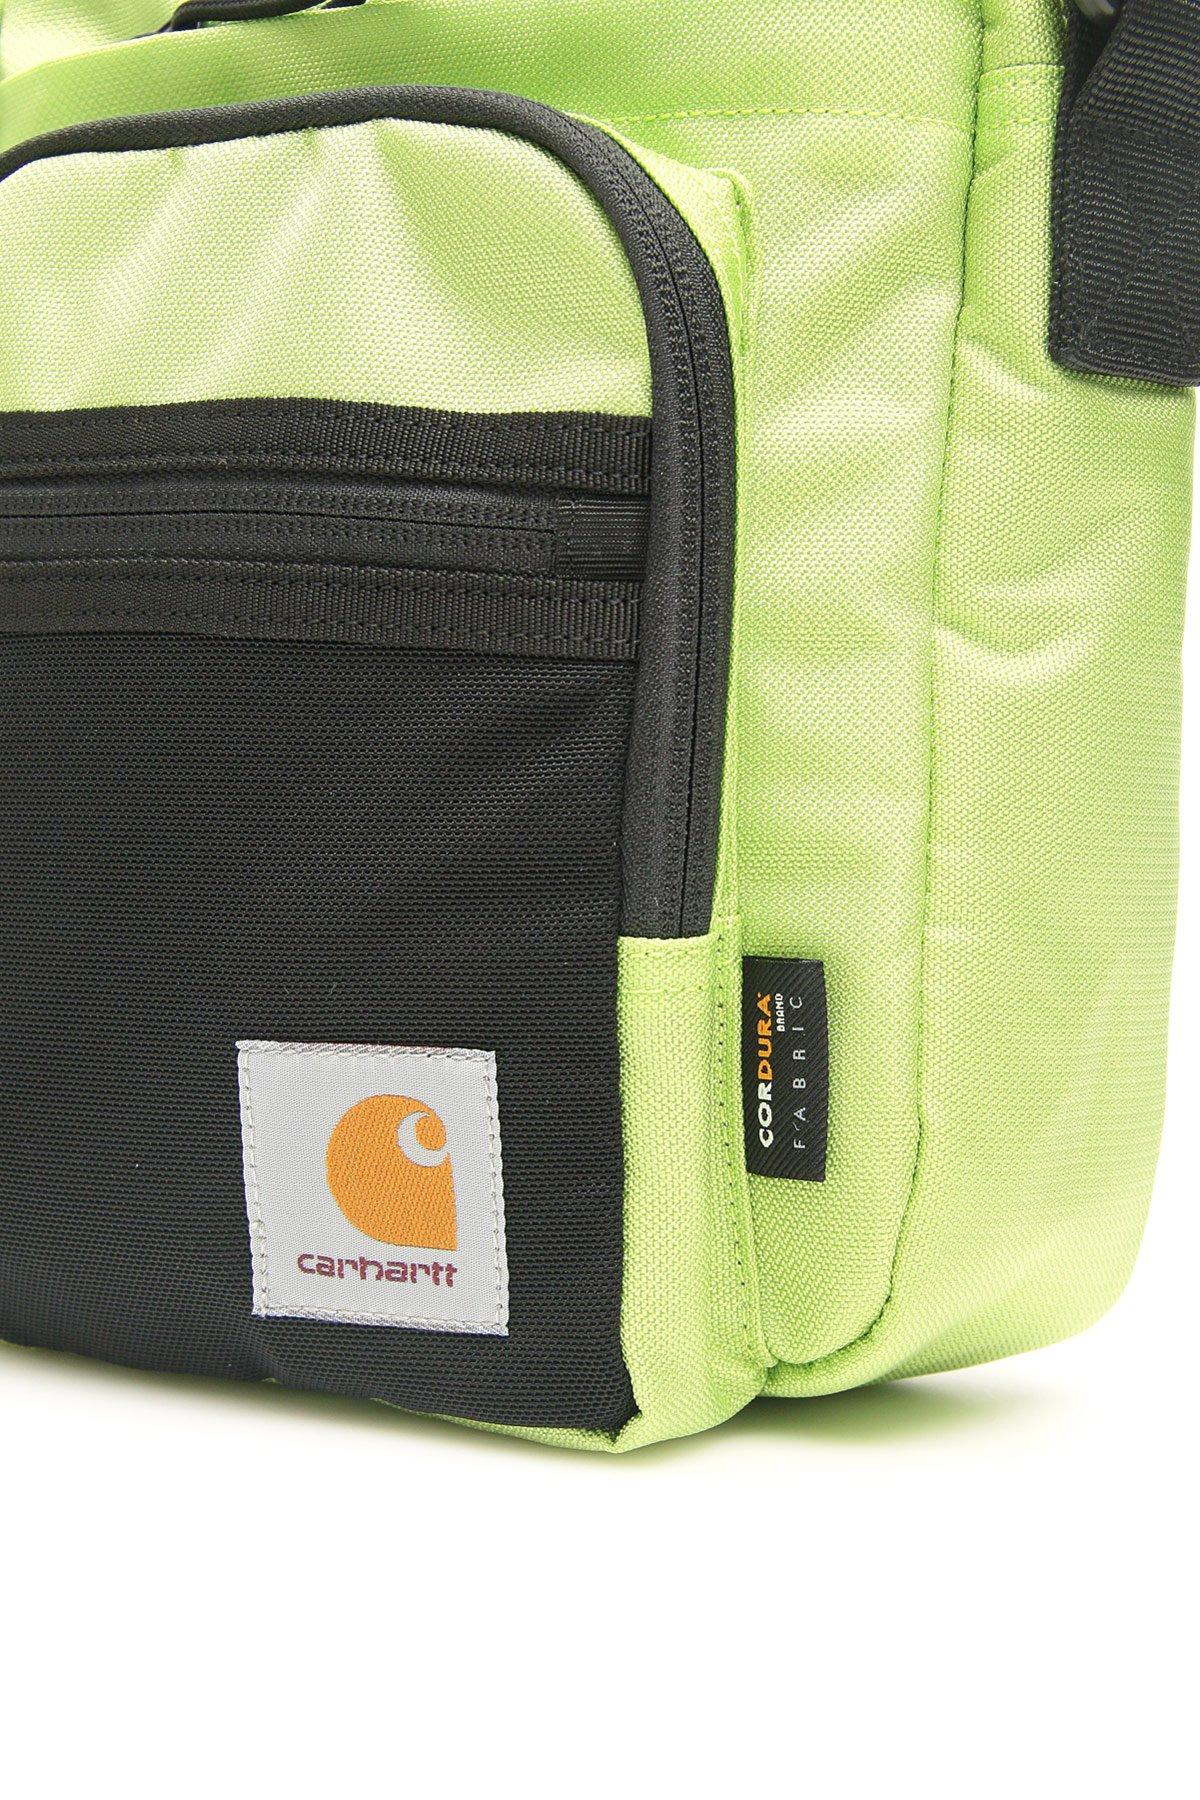 Carhartt WIP Delta Travel Crossbody Bag - Farfetch